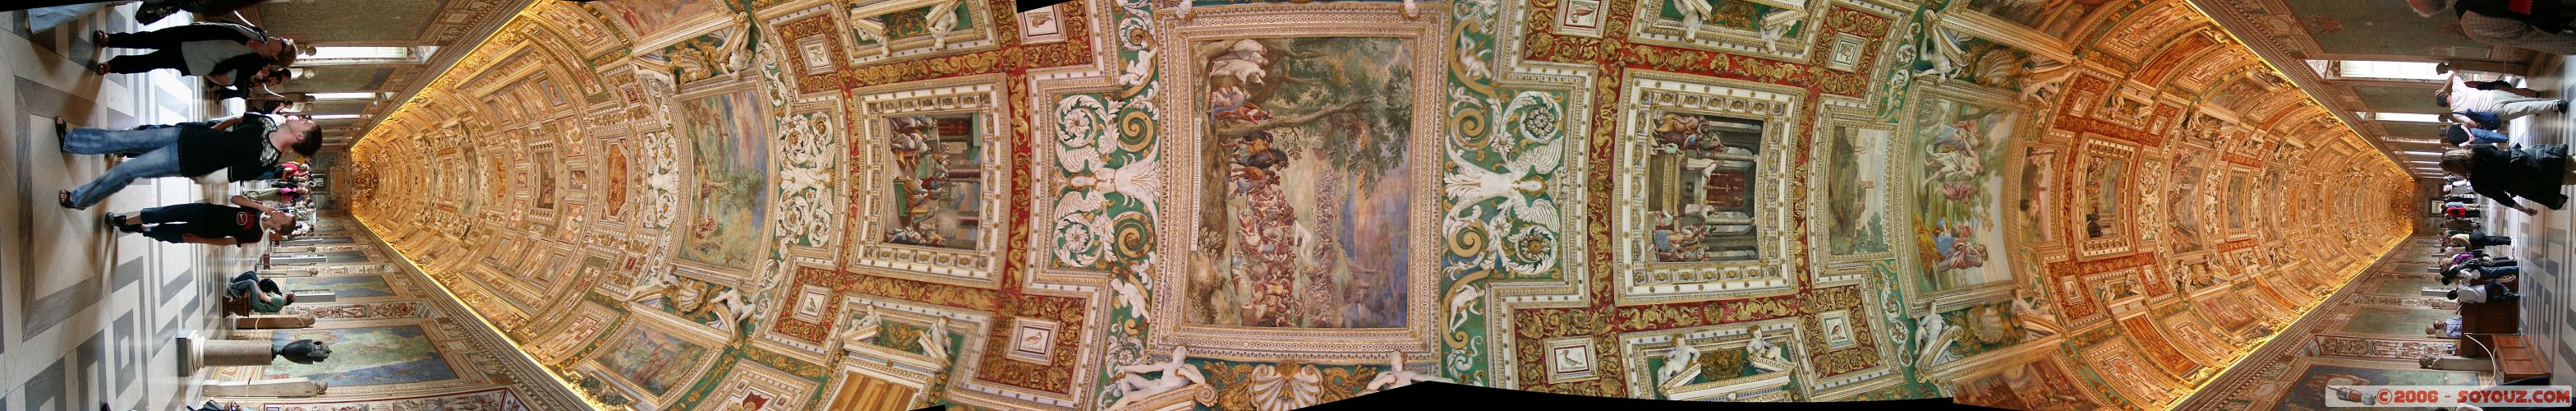 Muse du Vatican - vue "panoramique" de la gallerie
